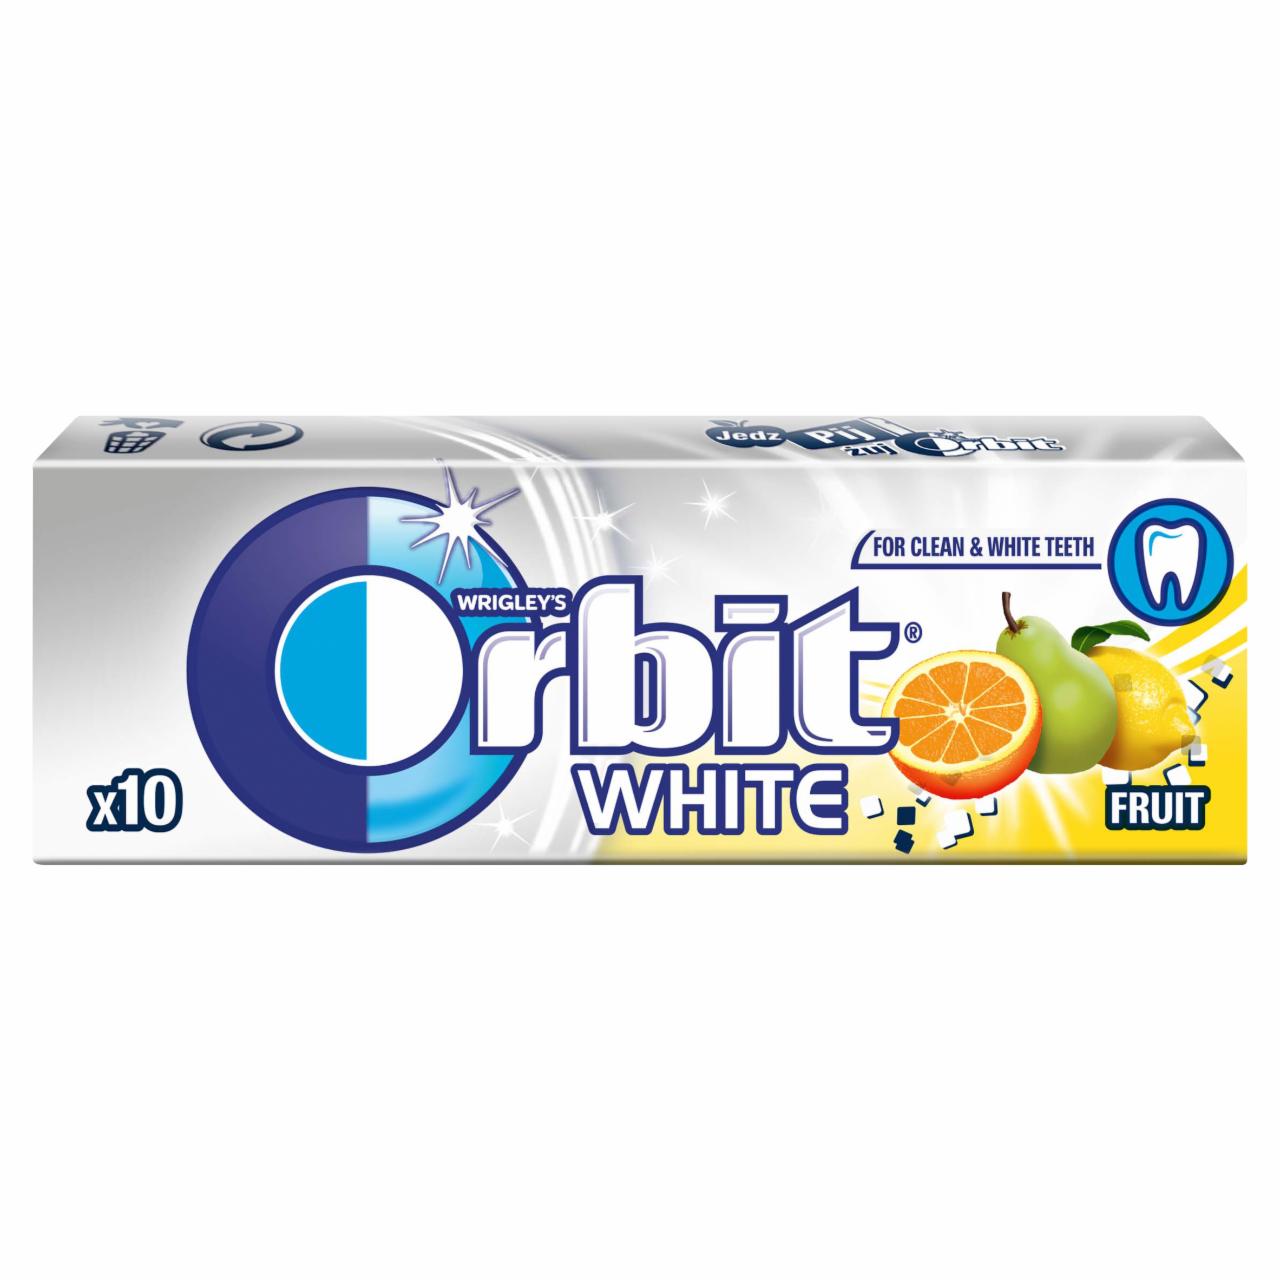 Fotografie - Orbit White Fruit